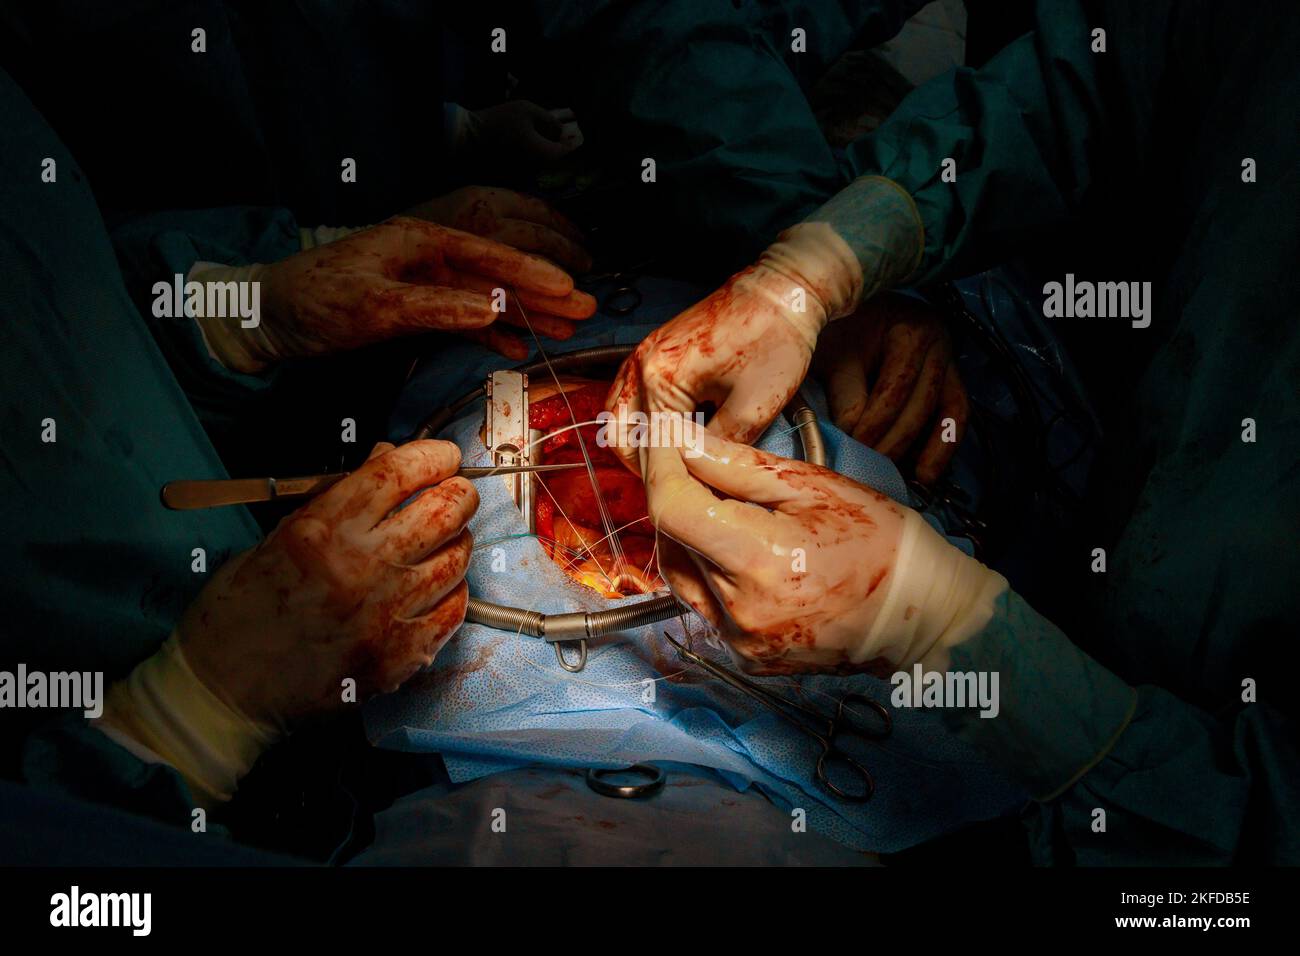 La sostituzione della valvola viene eseguita in sala operatoria quando una valvola malfunzionante il cuore provoca un intervento chirurgico a cuore aperto Foto Stock